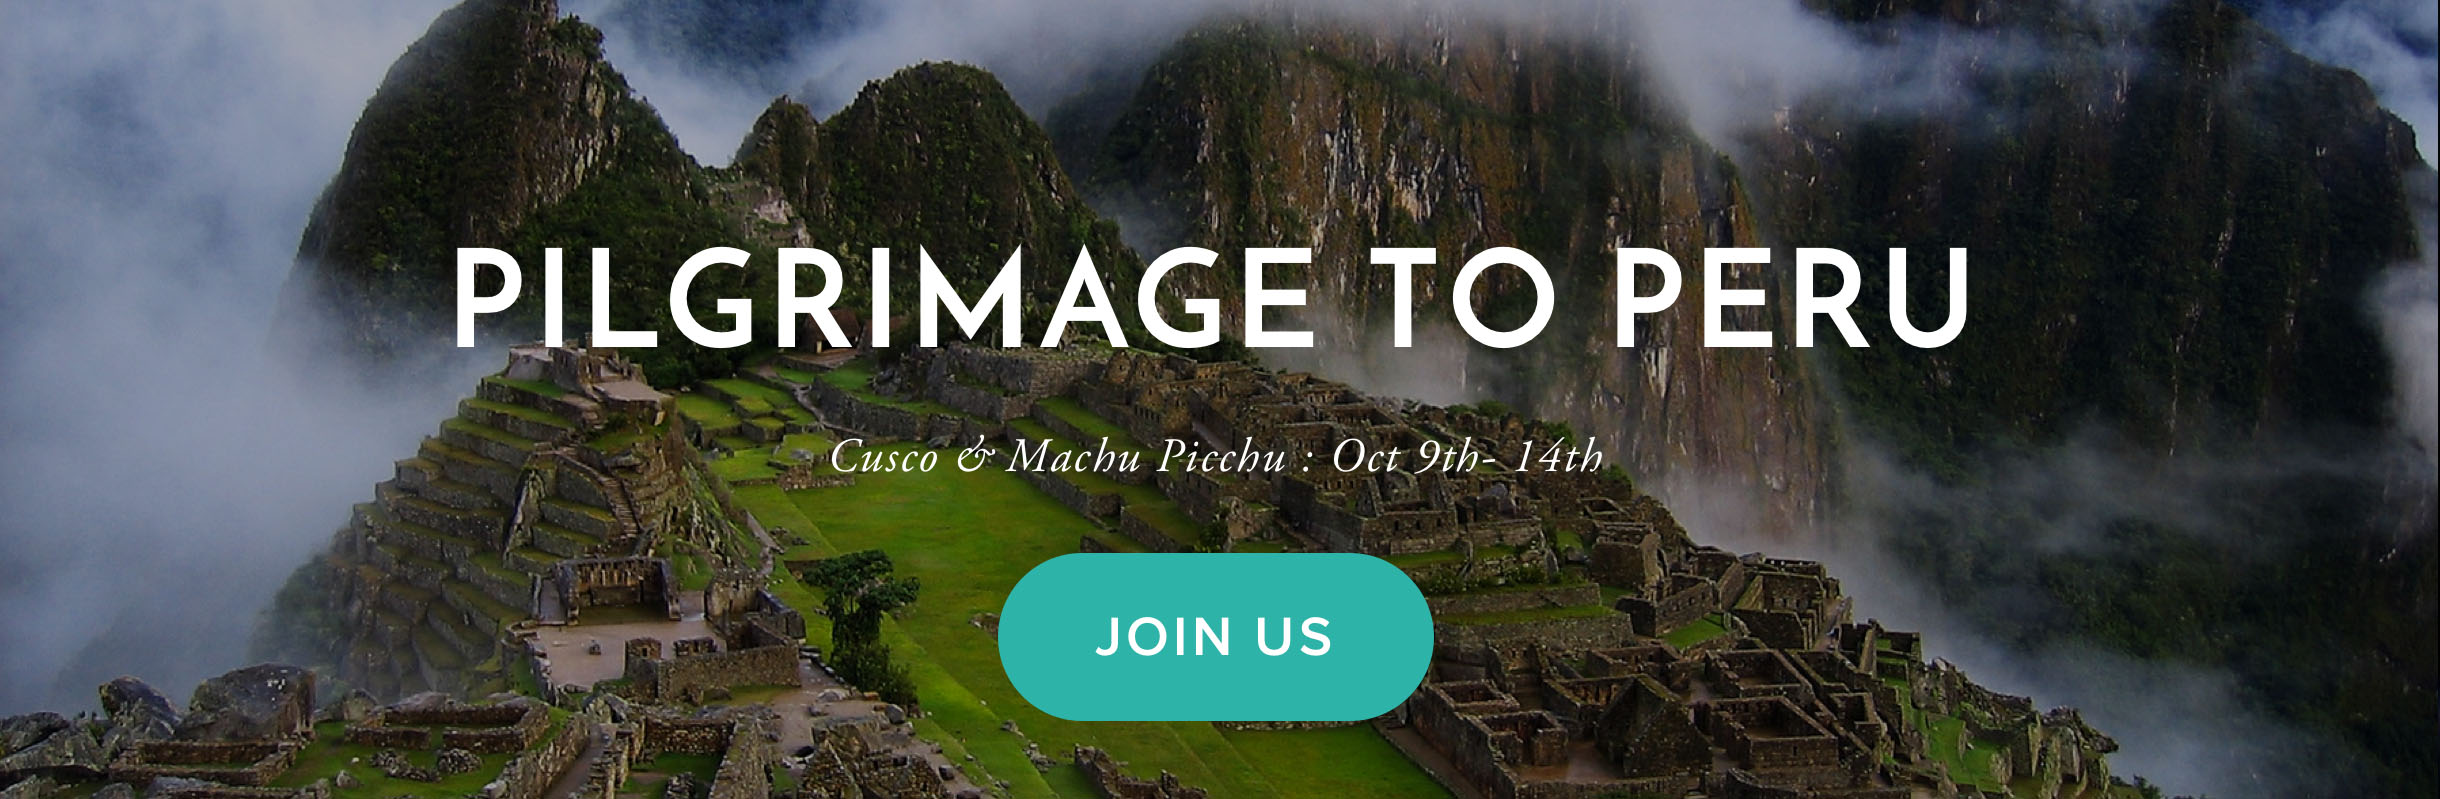 DREAMS DO COME TRUE! Pilgrimage to Cusco & Machu Picchu Peru